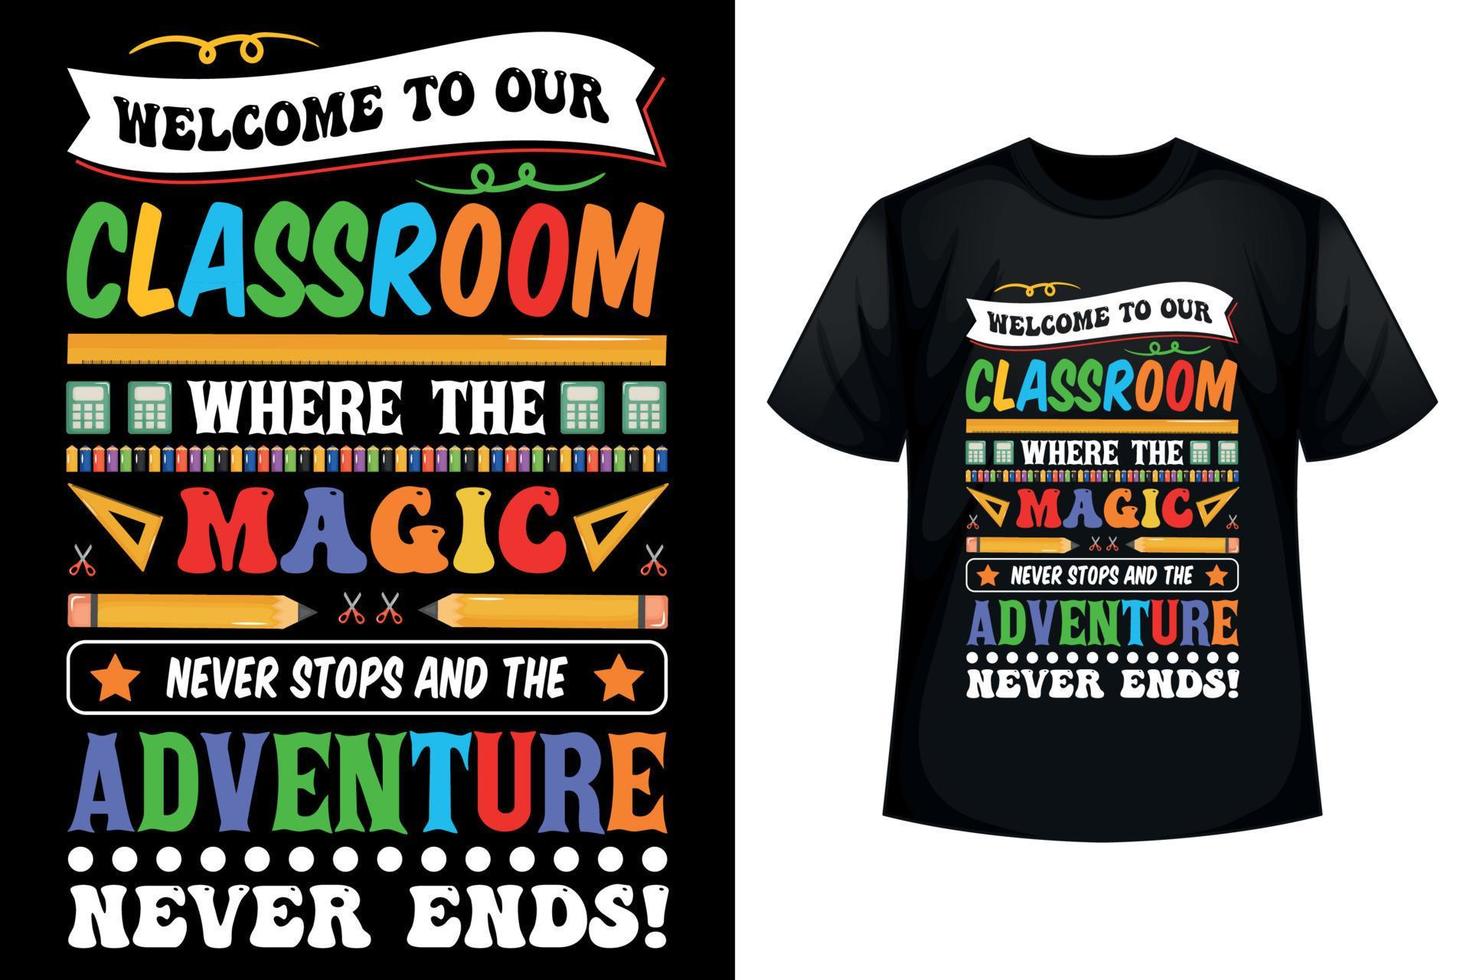 bienvenido a nuestro salón de clases donde la magia nunca se detiene y la aventura nunca termina - camiseta de regreso a la escuela vector